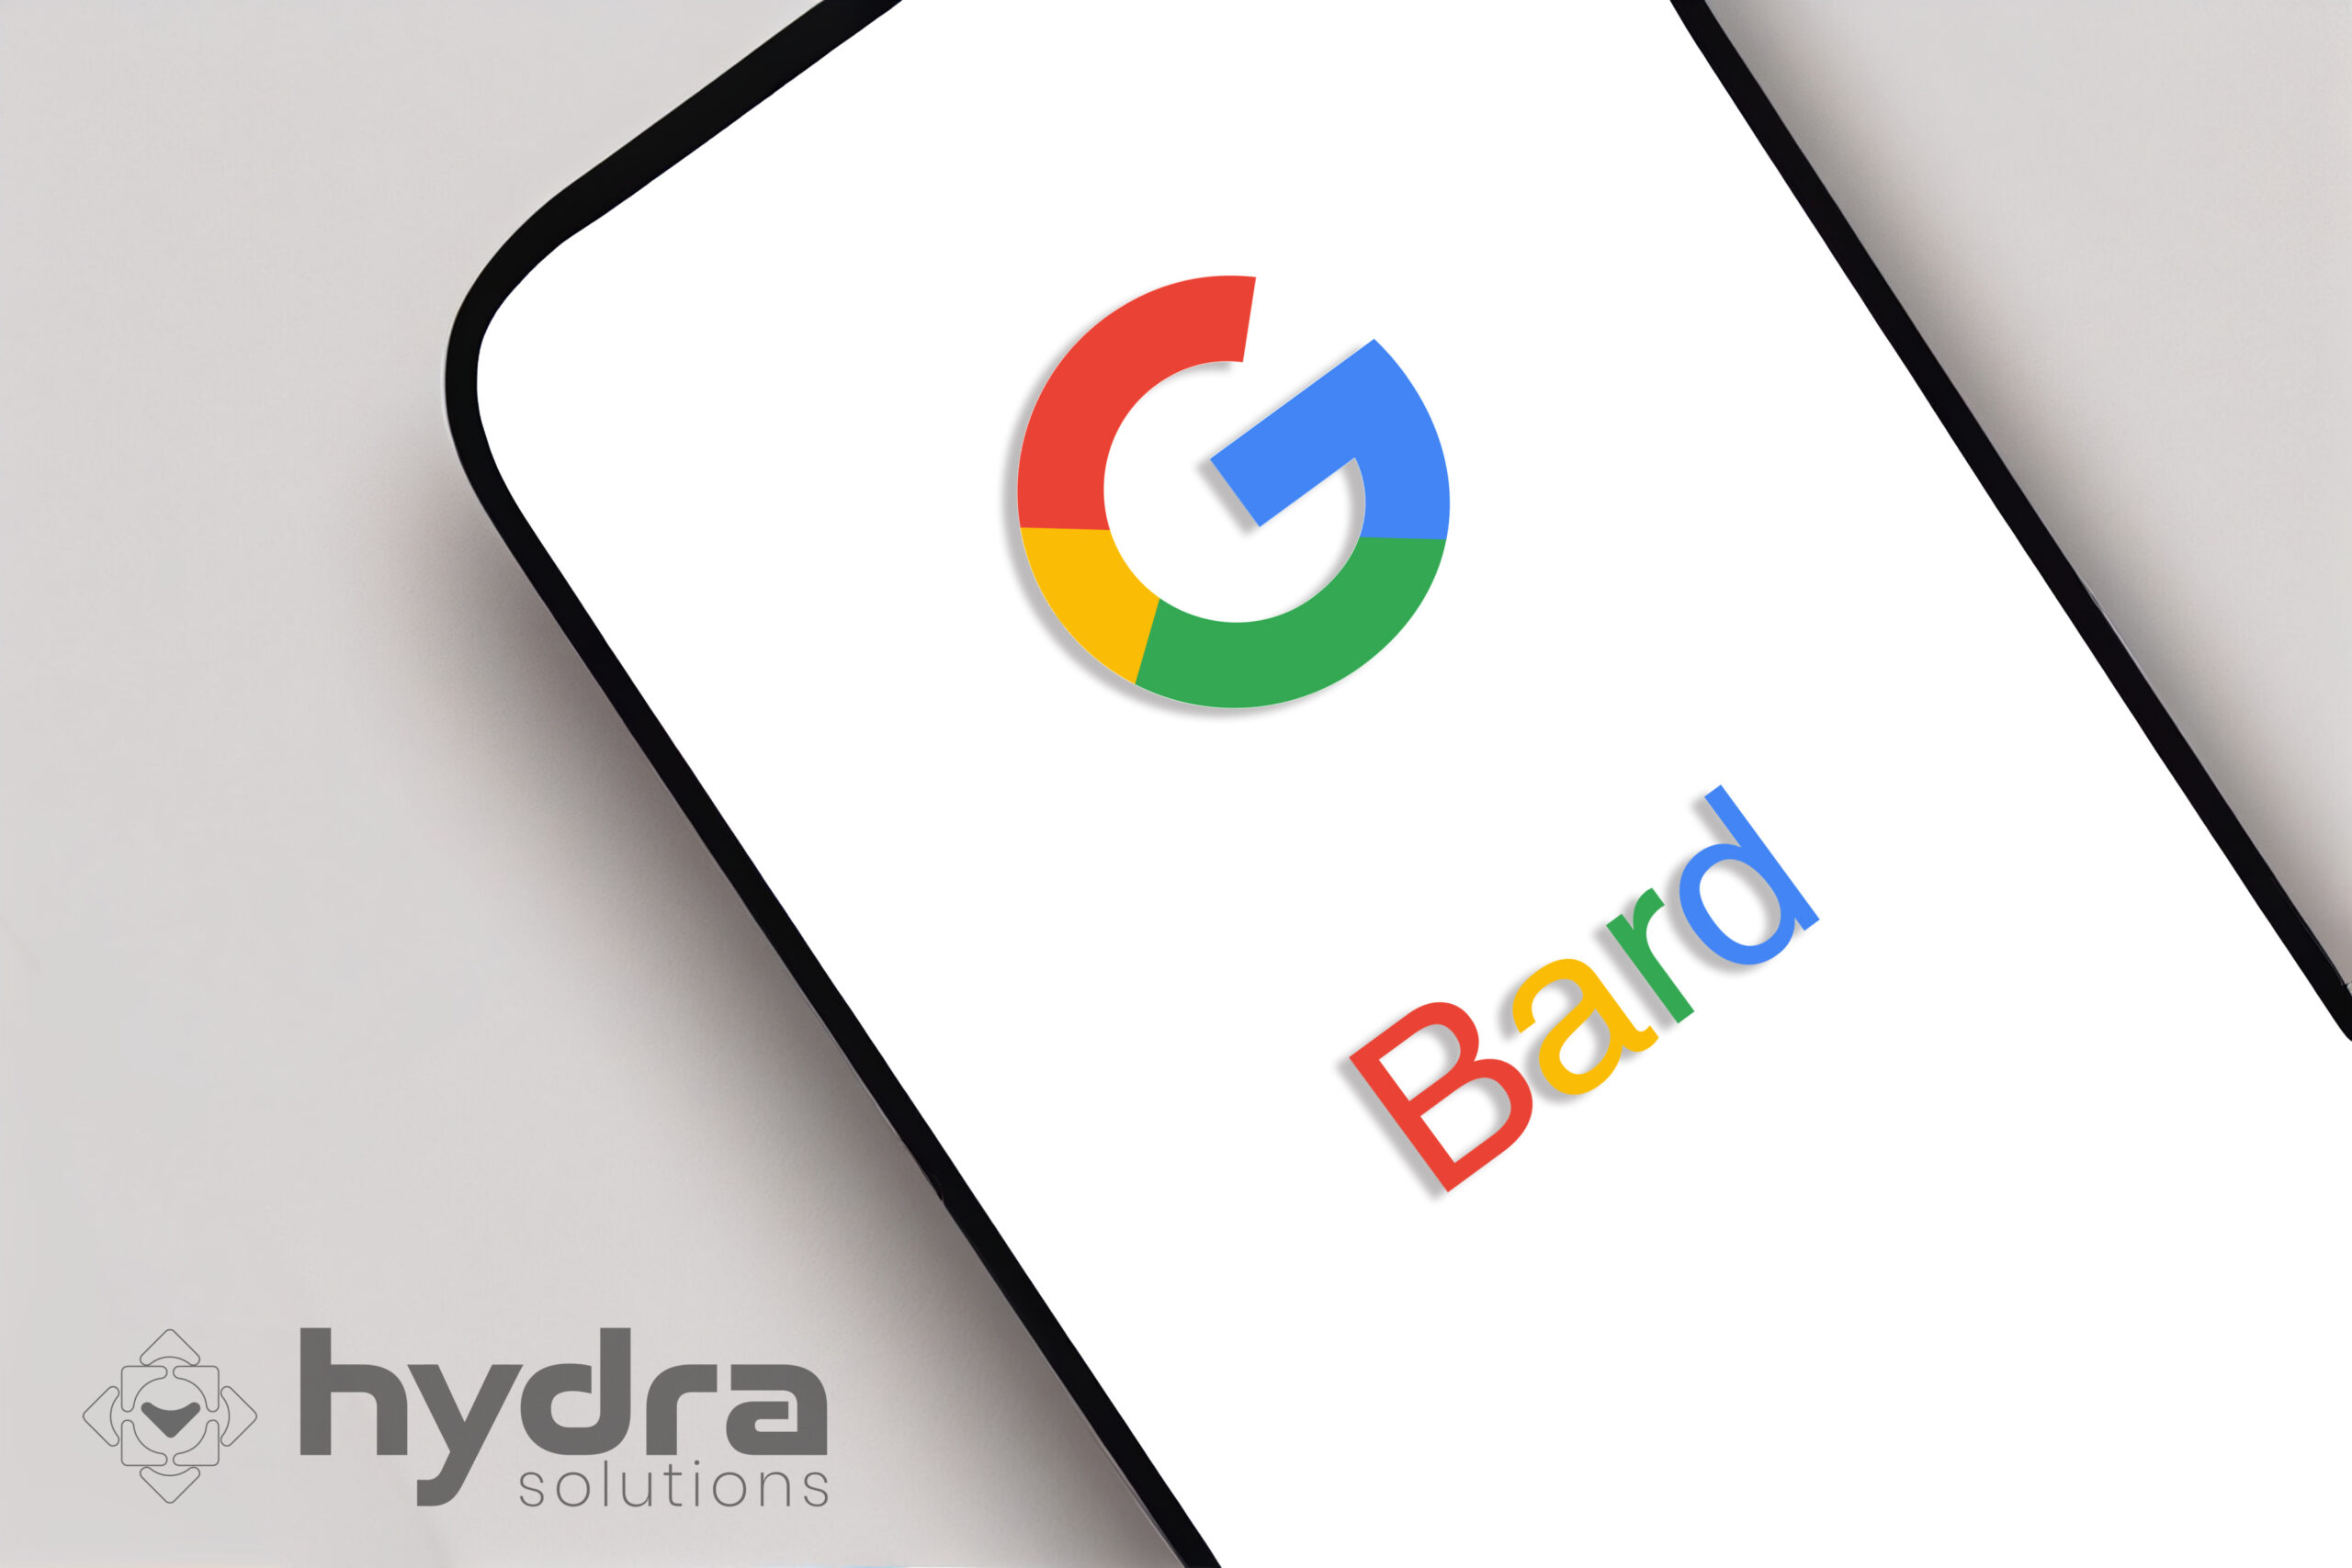 Google Bard, chatbot